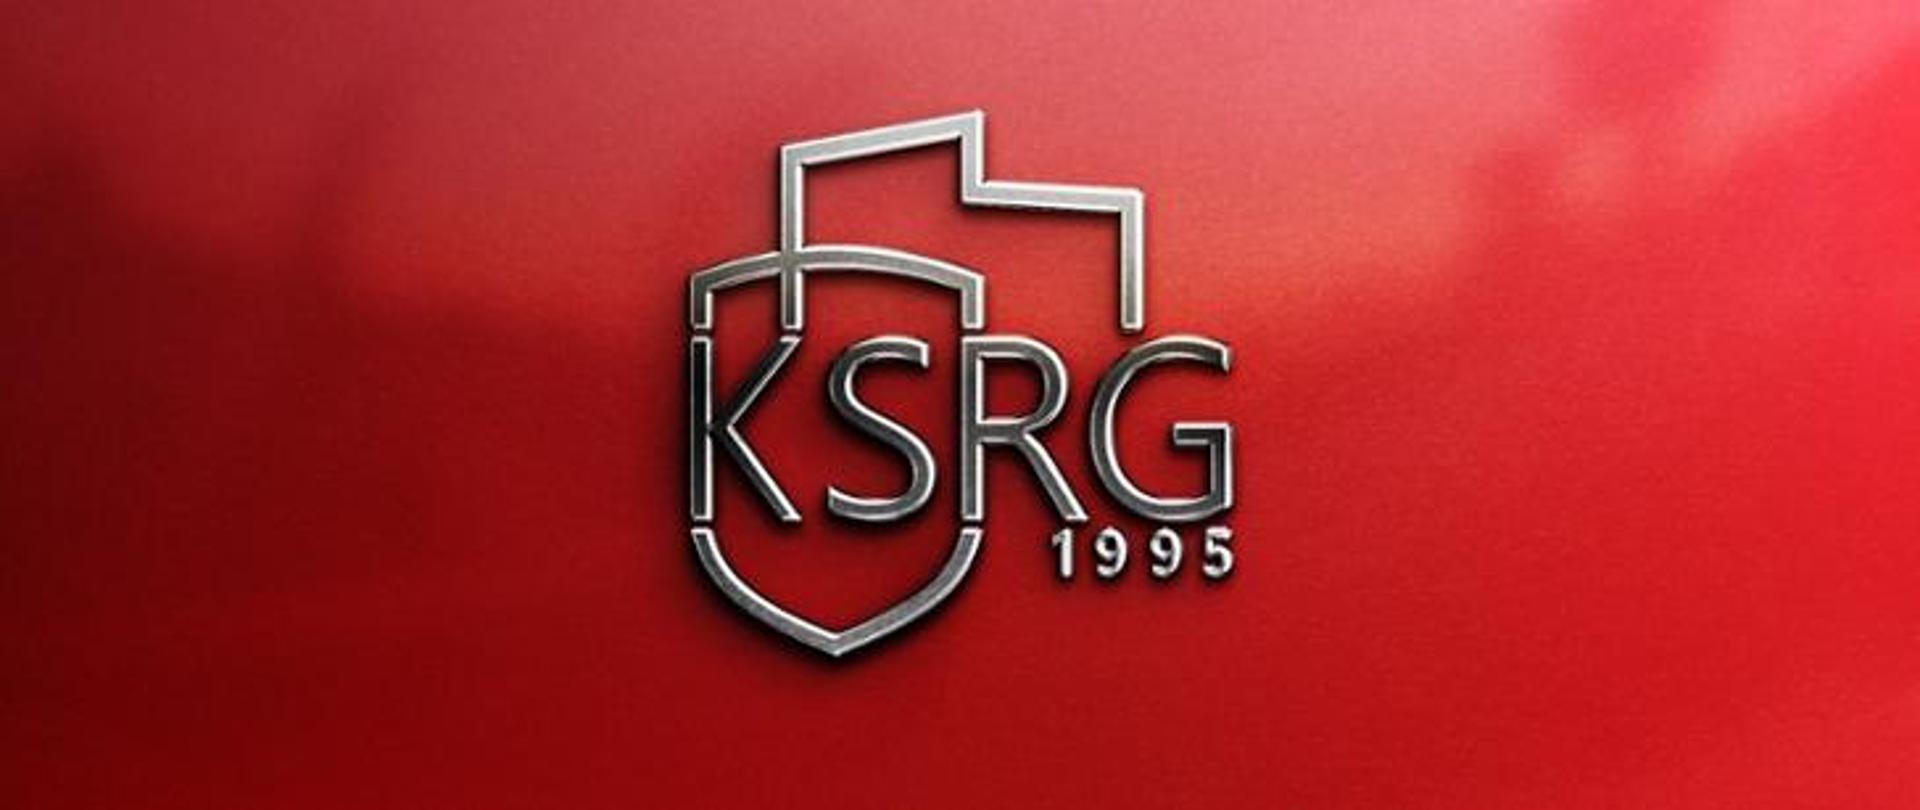 Na czerwonym tle napis KSRG 1995